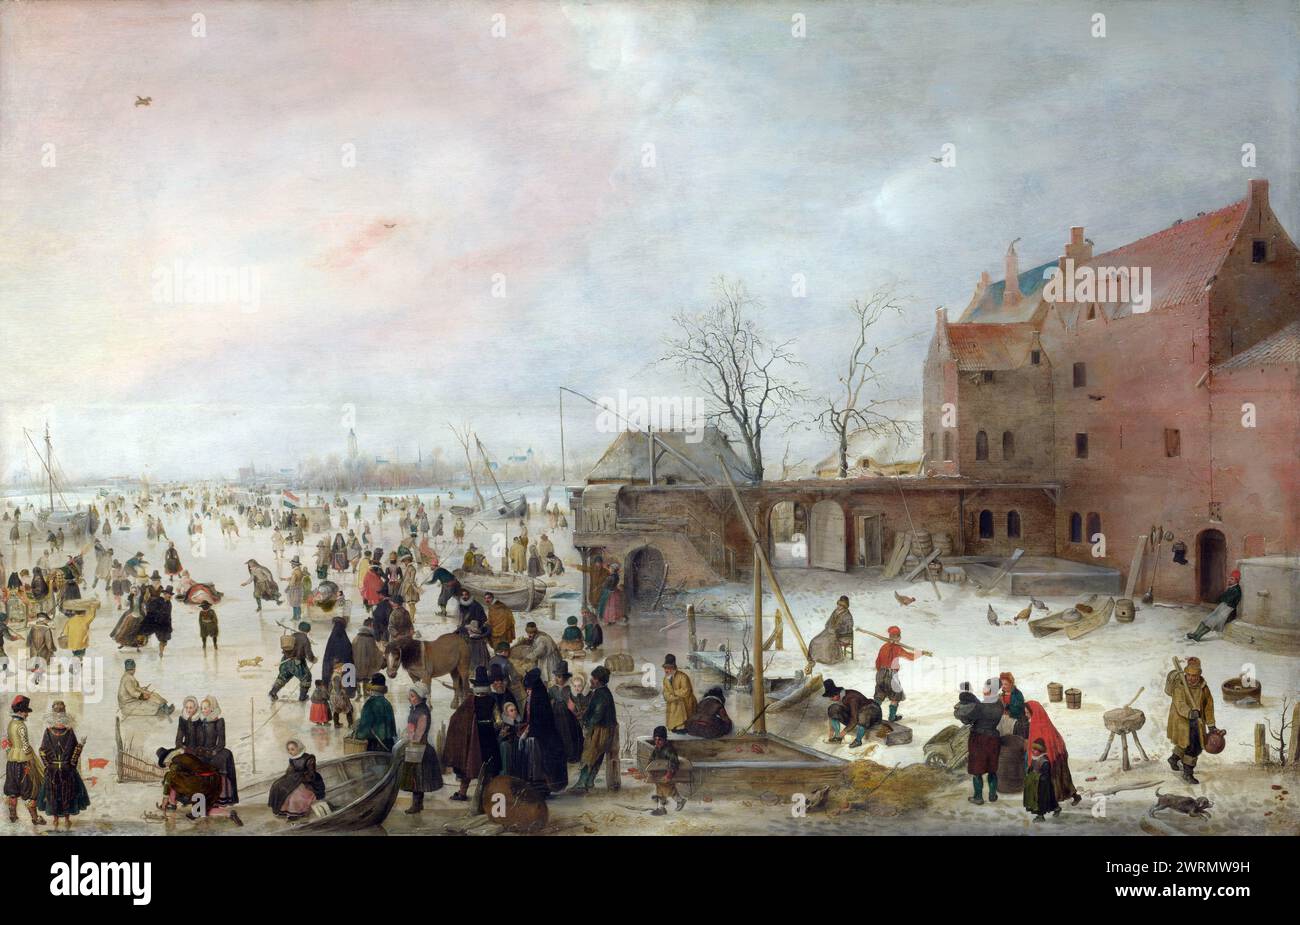 Partie 3 National Gallery UK – Hendrick Avercamp - Une scène sur la glace près d'une ville Banque D'Images